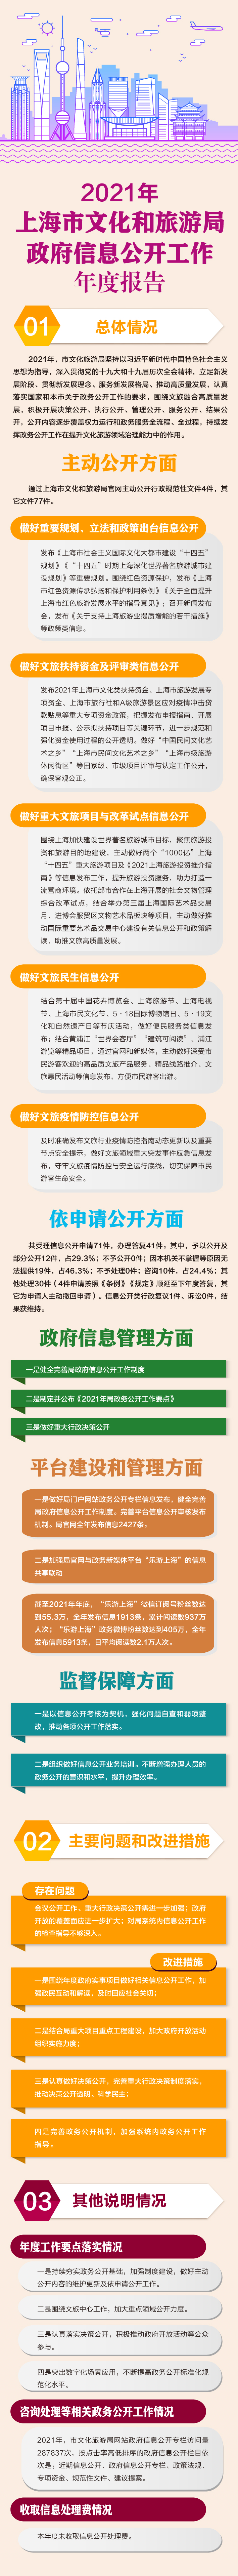 2020年上海市文化和旅游局政府信息公开工作年度报告.jpg